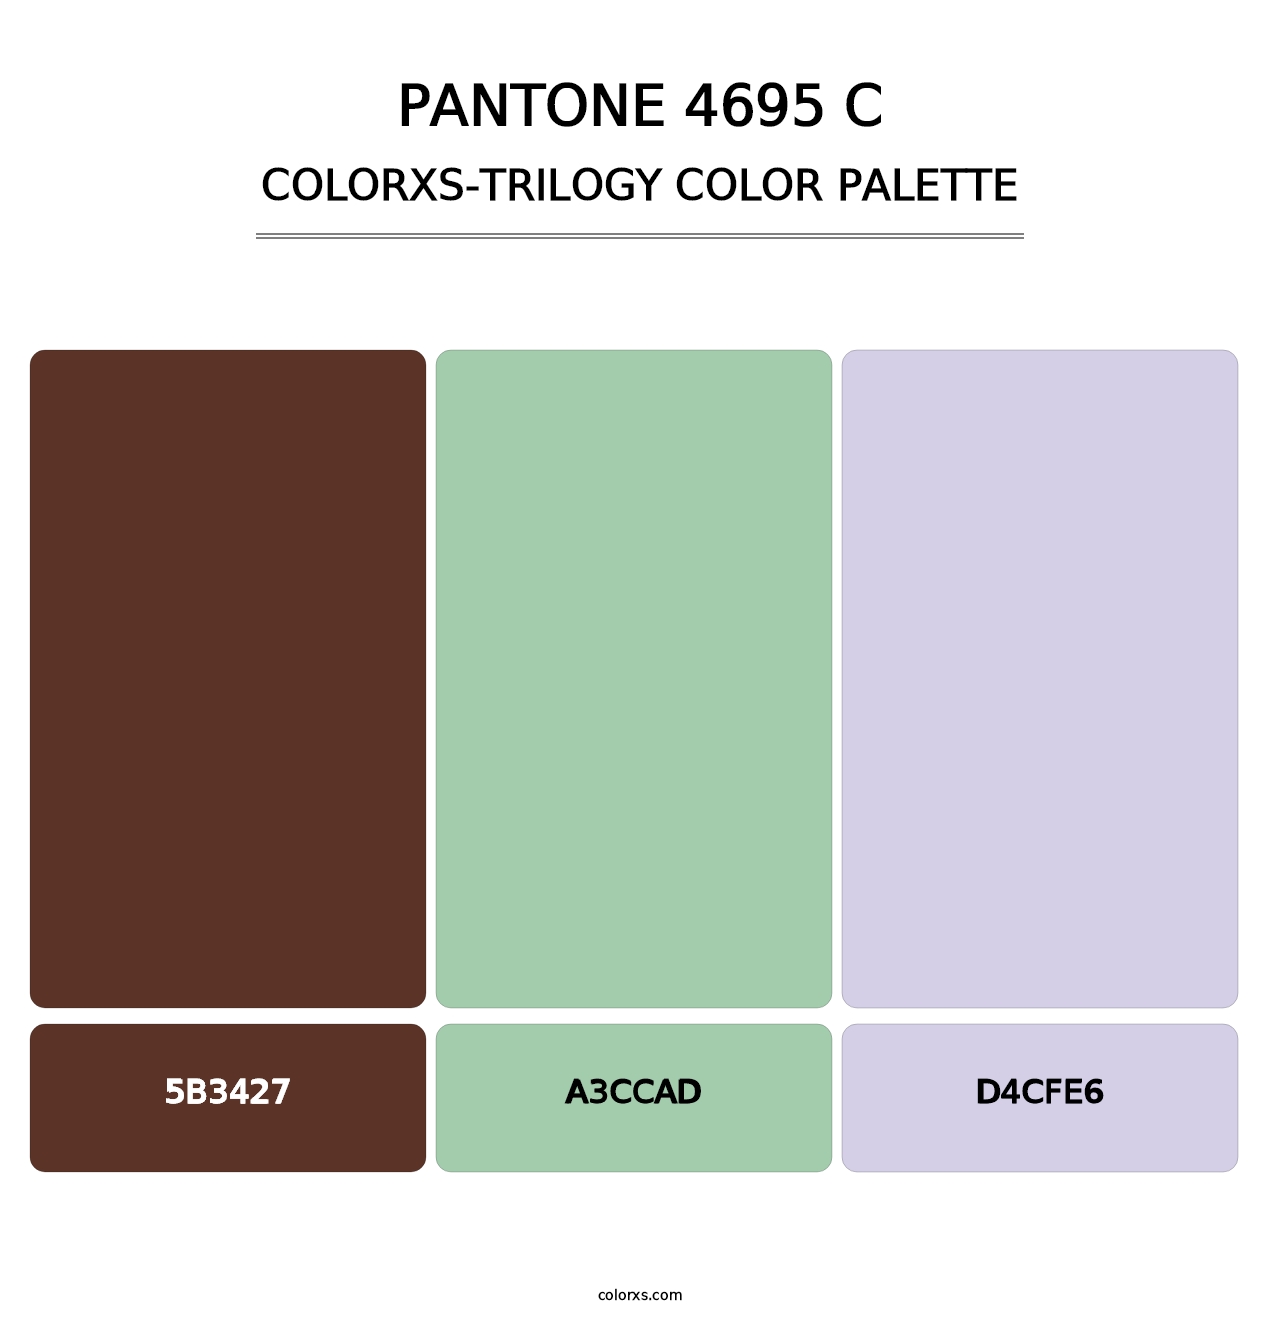 PANTONE 4695 C - Colorxs Trilogy Palette